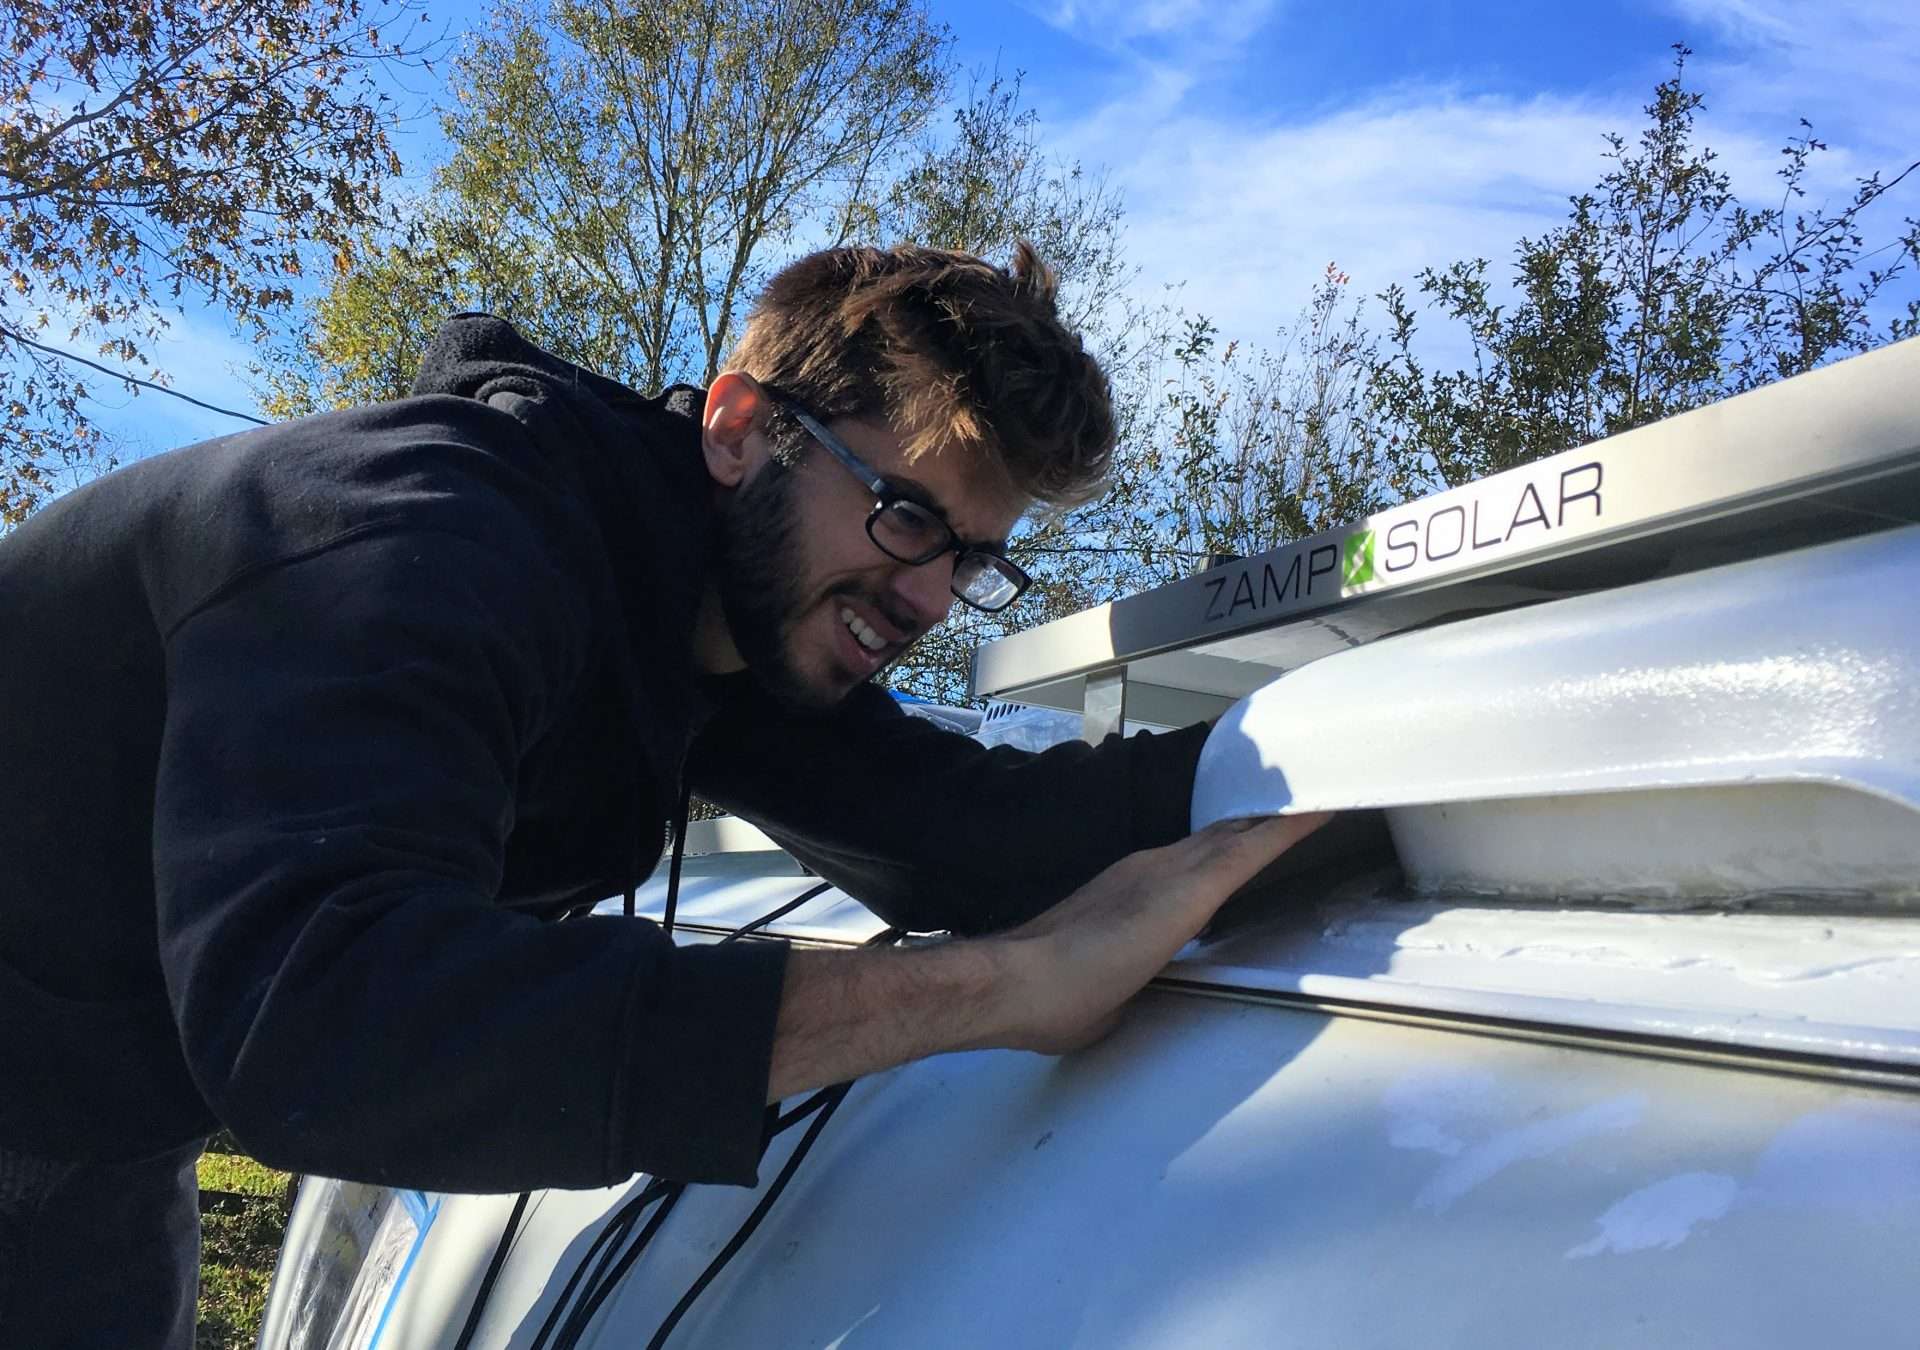 DIY solar panel install on RV roof